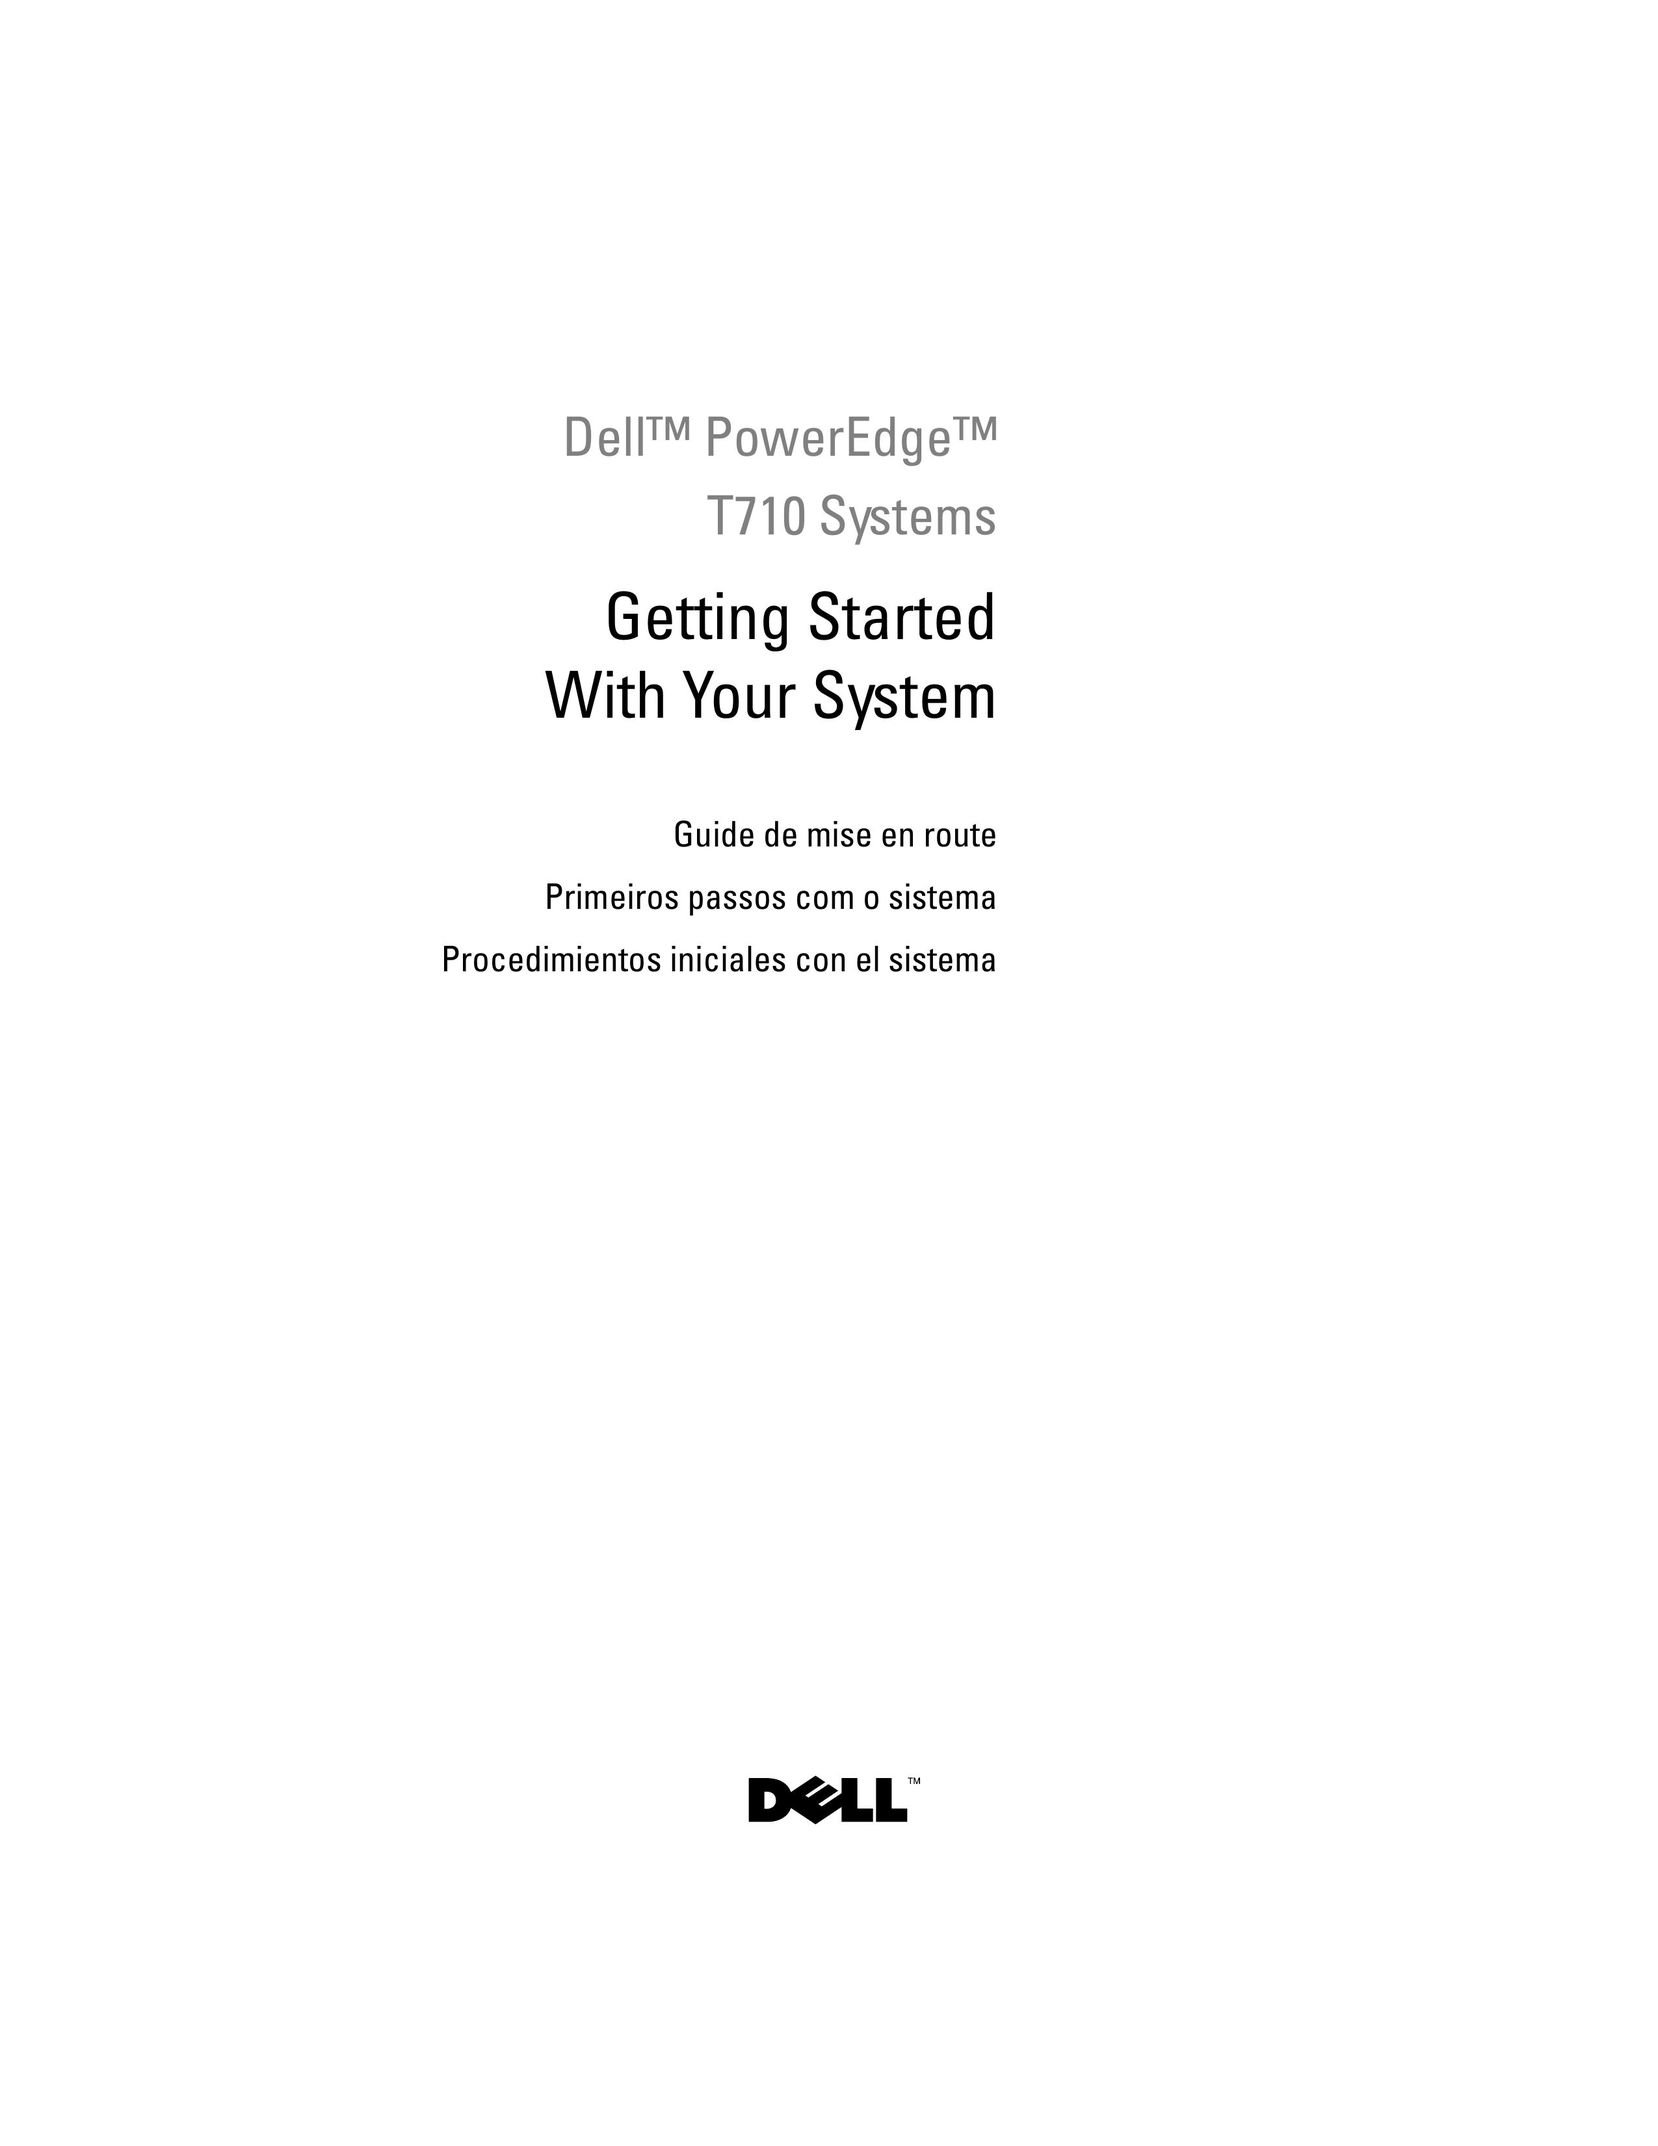 Dell E04S001 Server User Manual